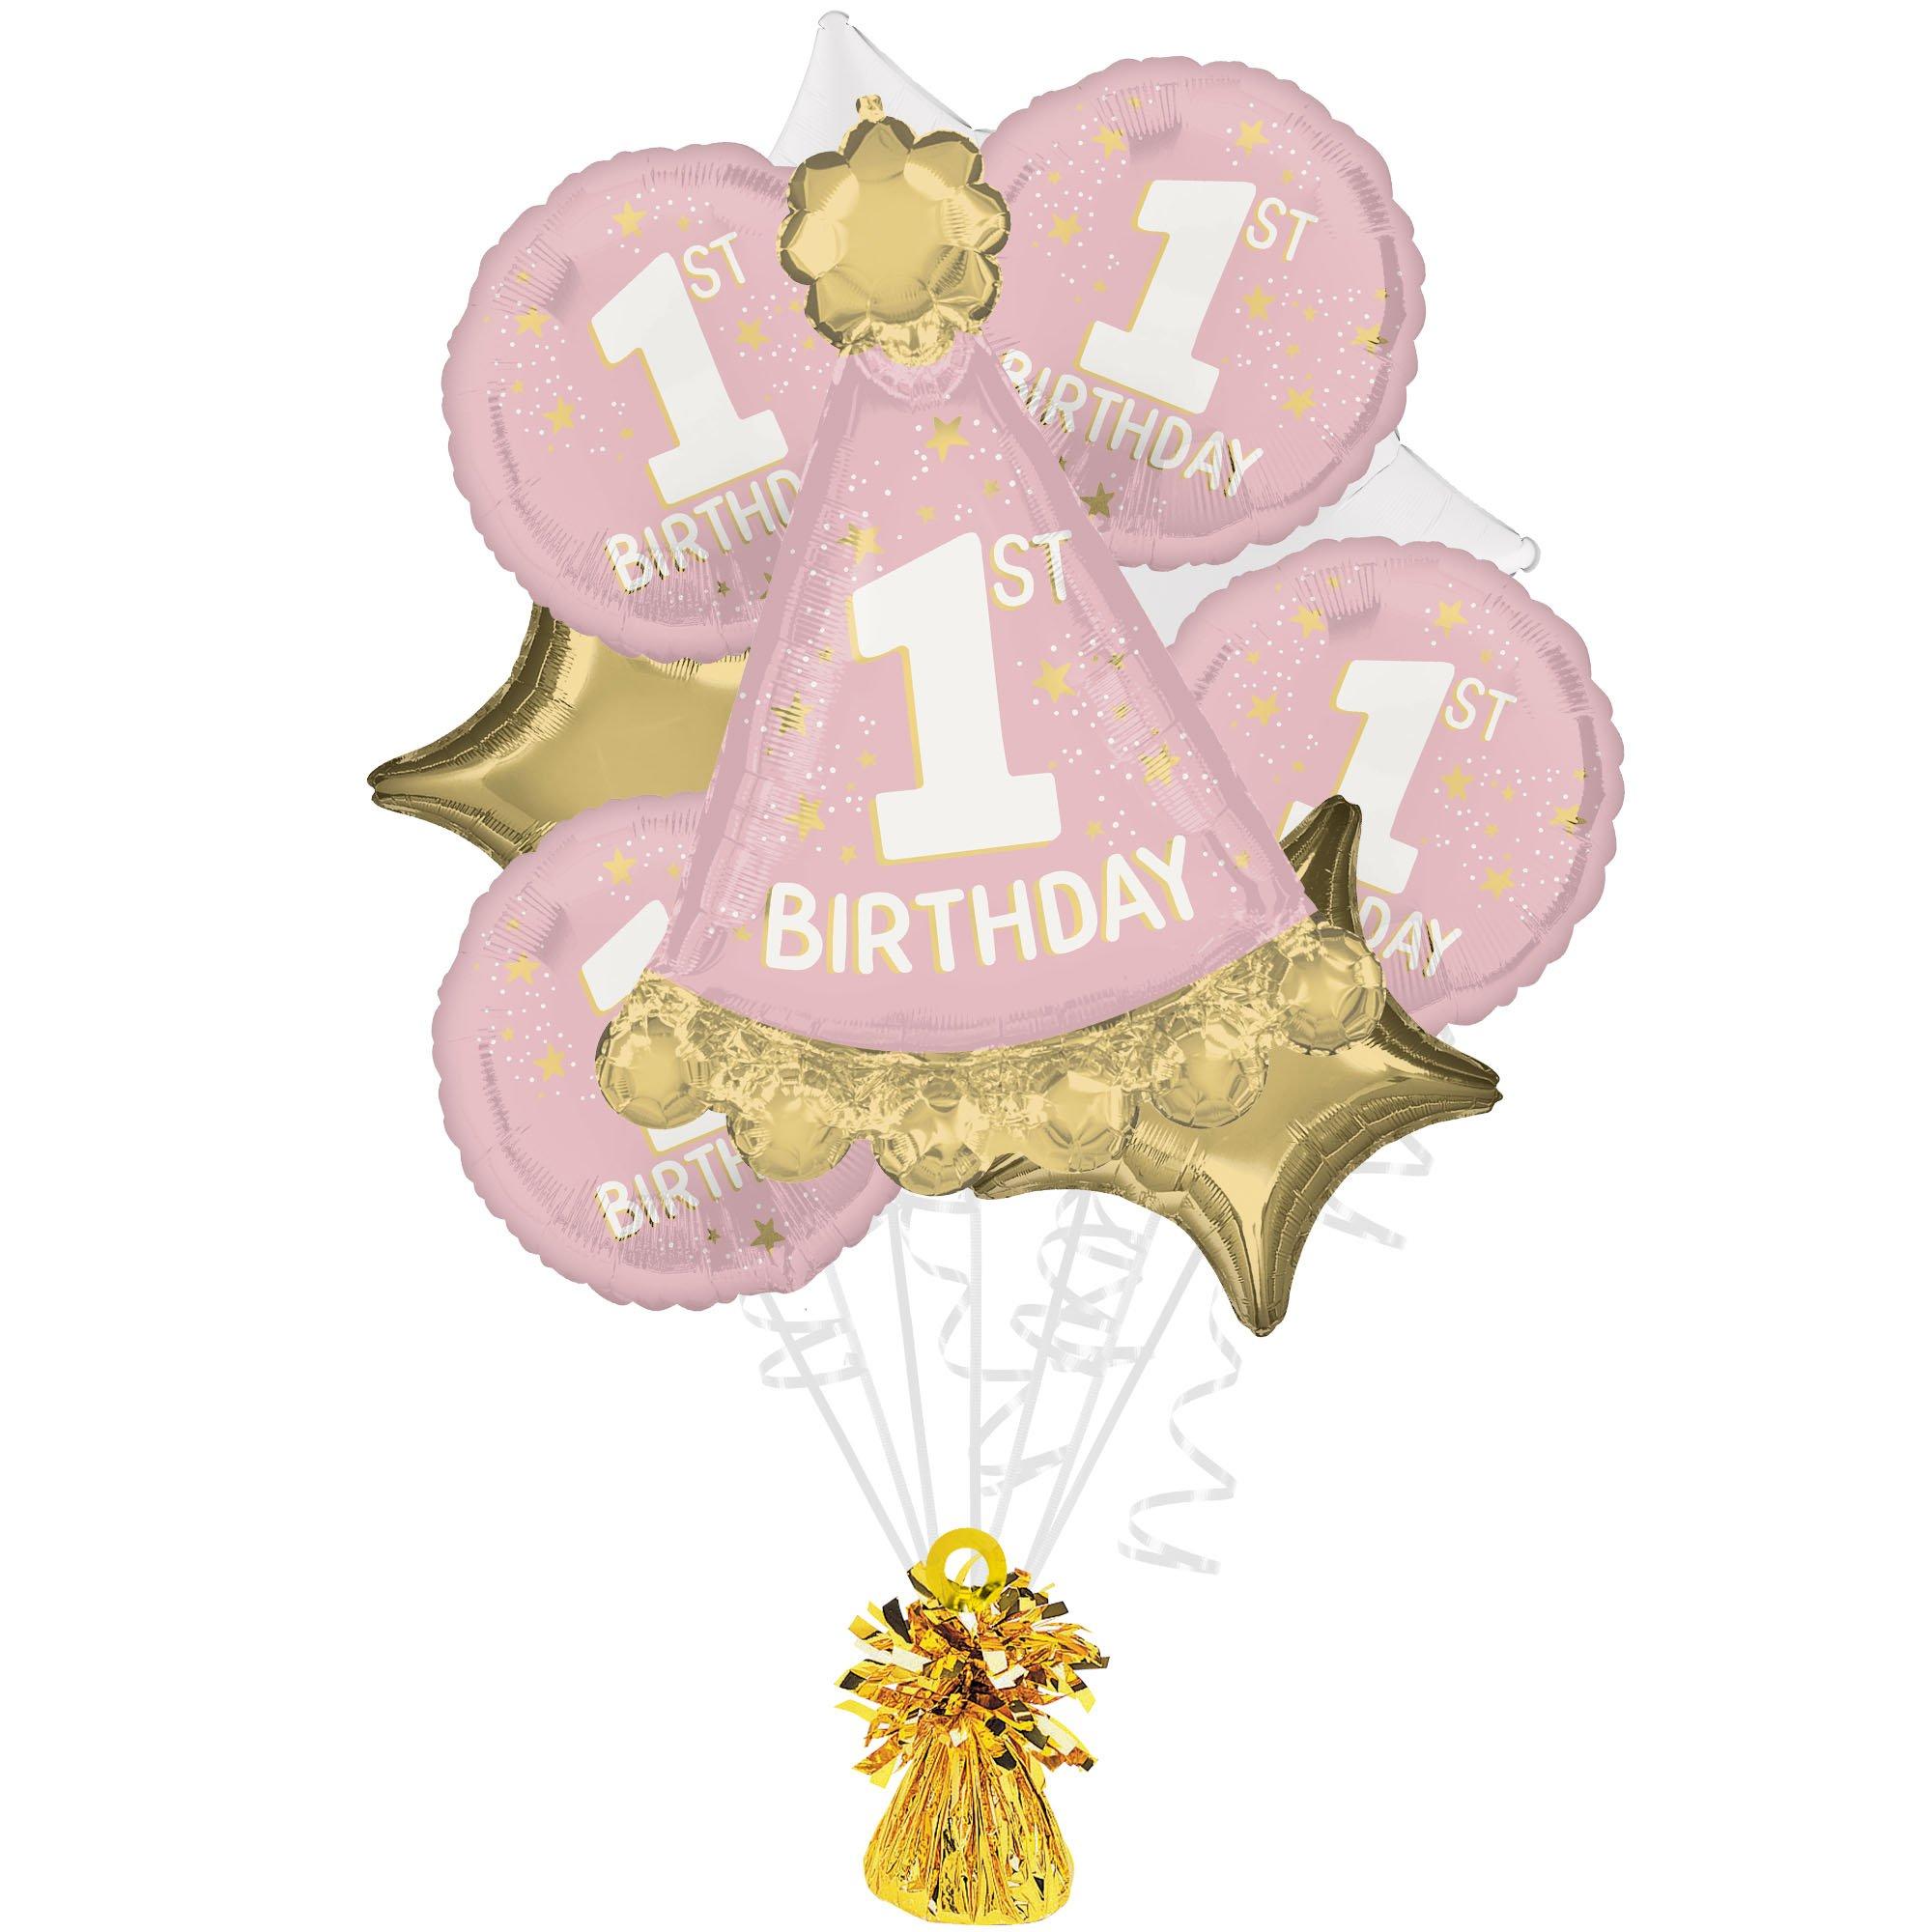 Little Miss One-derful 1st Birthday Foil Balloon Bouquet